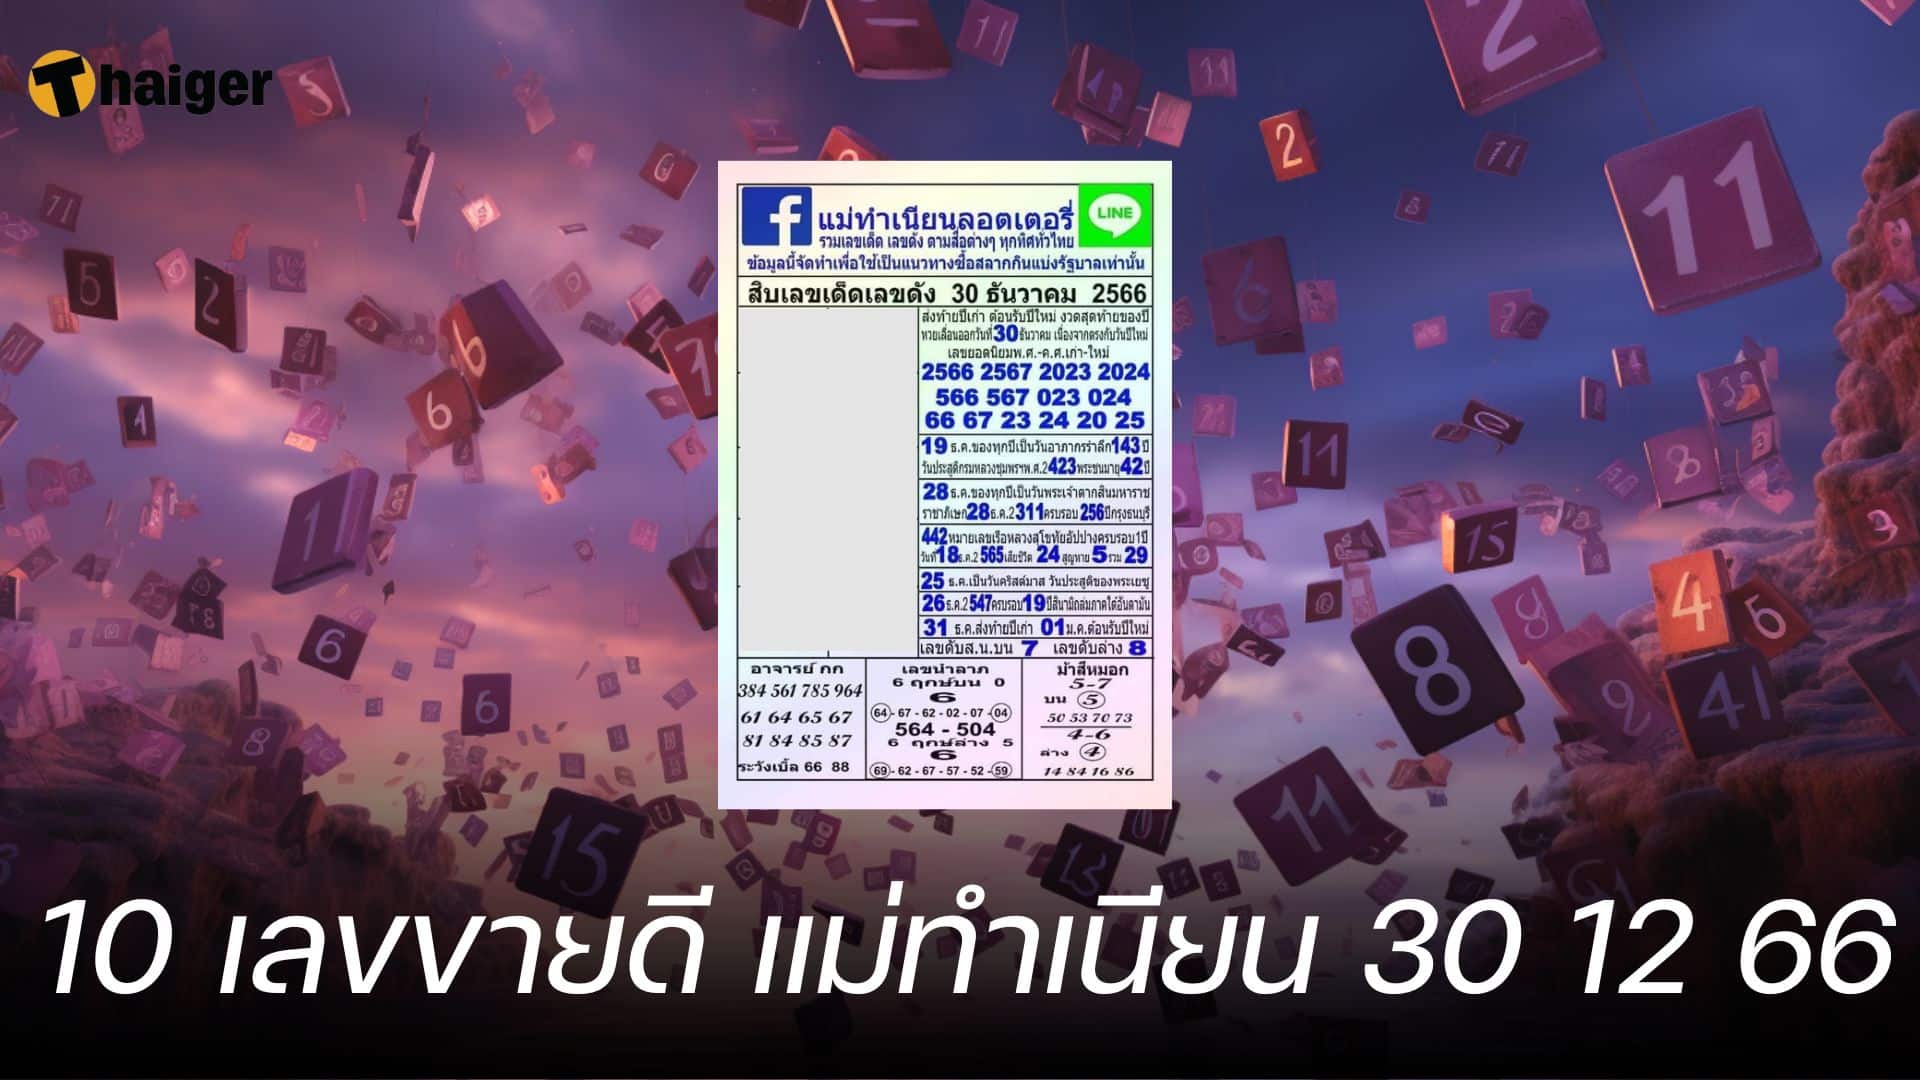 10 เลขขายดี แม่ทำเนียน หวยงวดนี้ 30 ธันวาคม 2566 | Thaiger ข่าวไทย